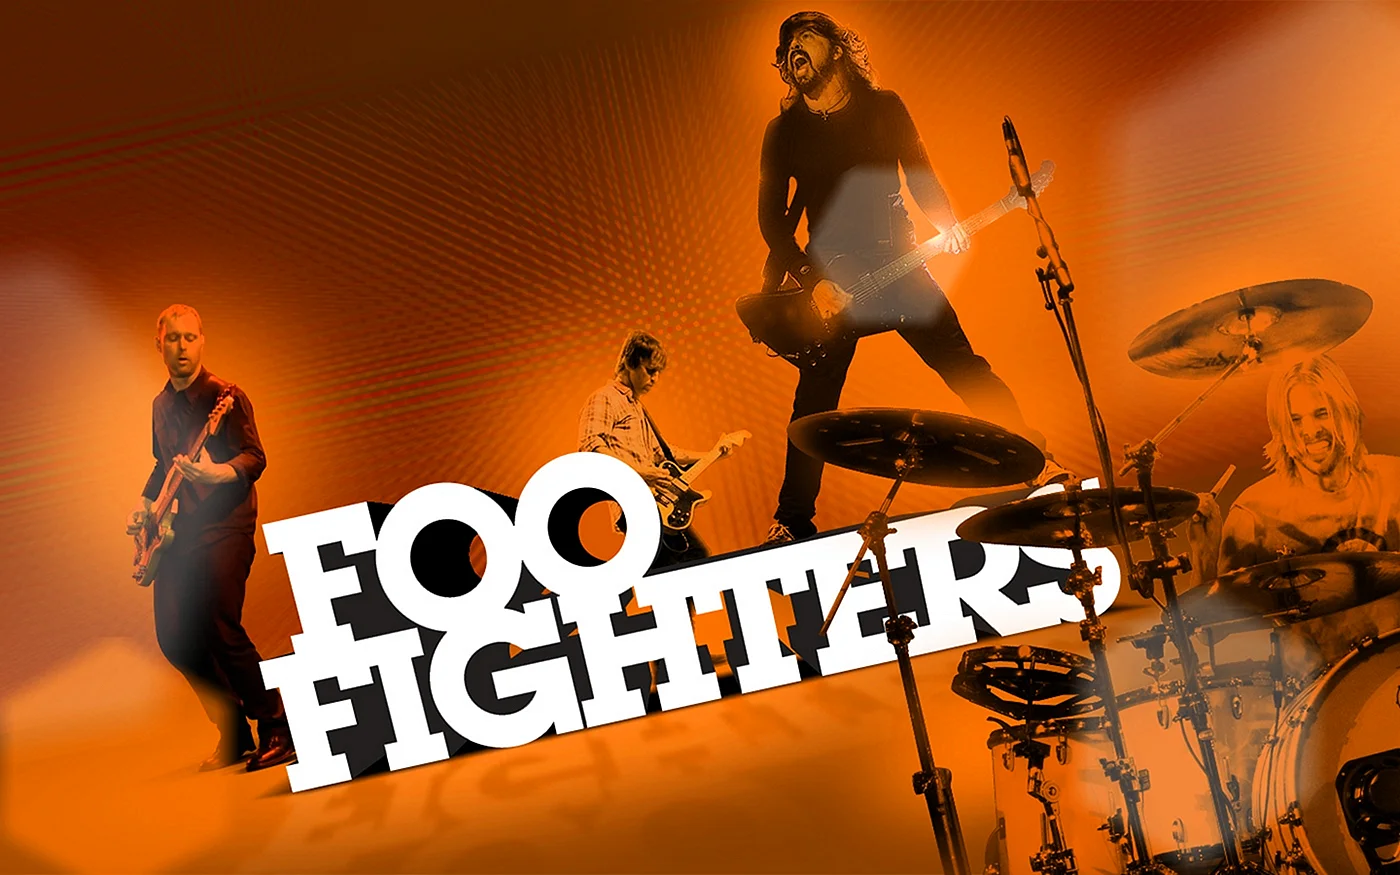 Foo Fighters Logo Wallpaper